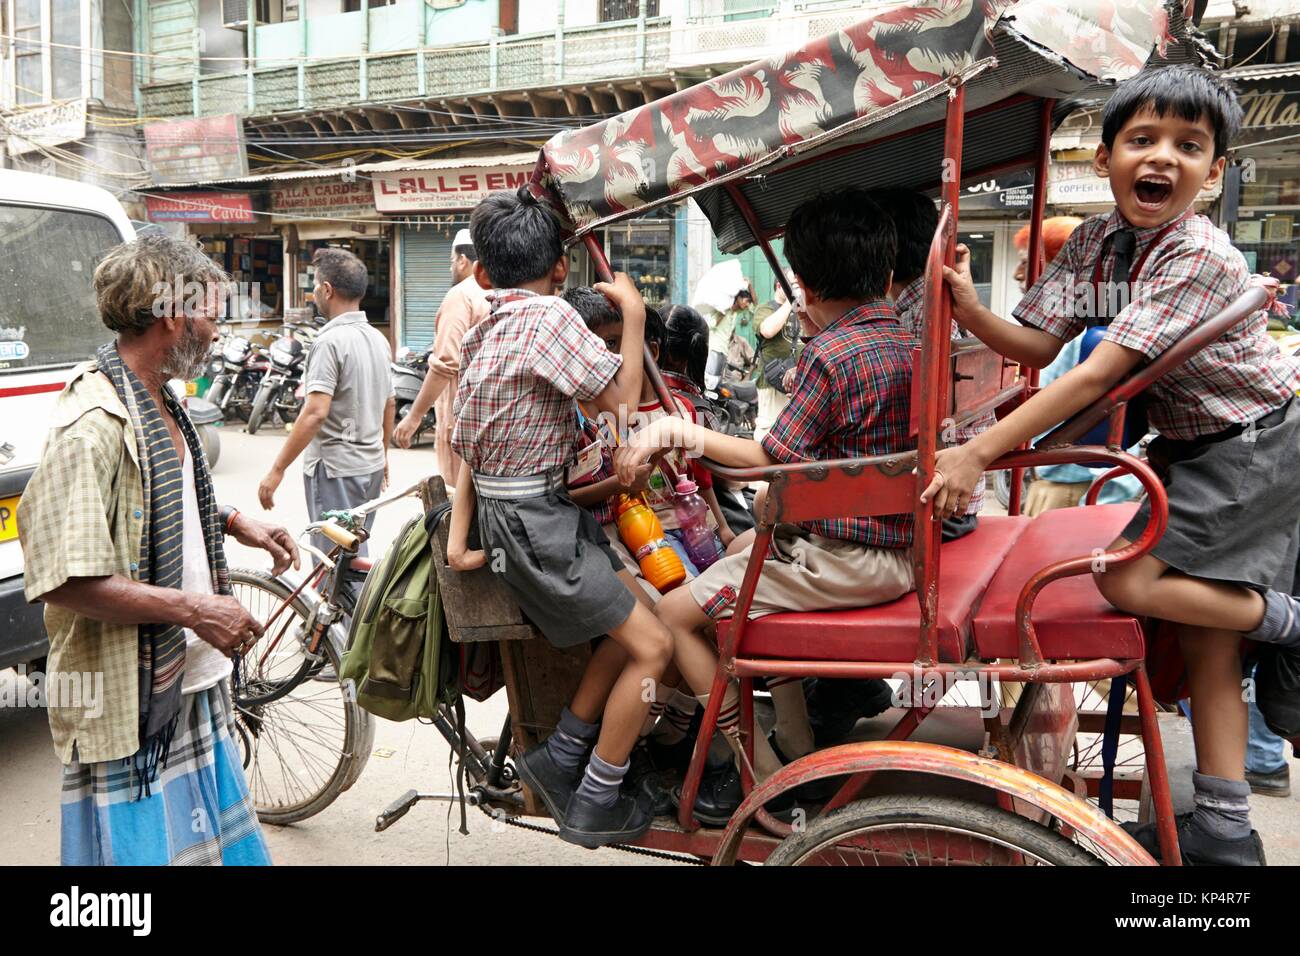 Street scene in Old Delhi, Delhi, Old Delhi, India. Stock Photo